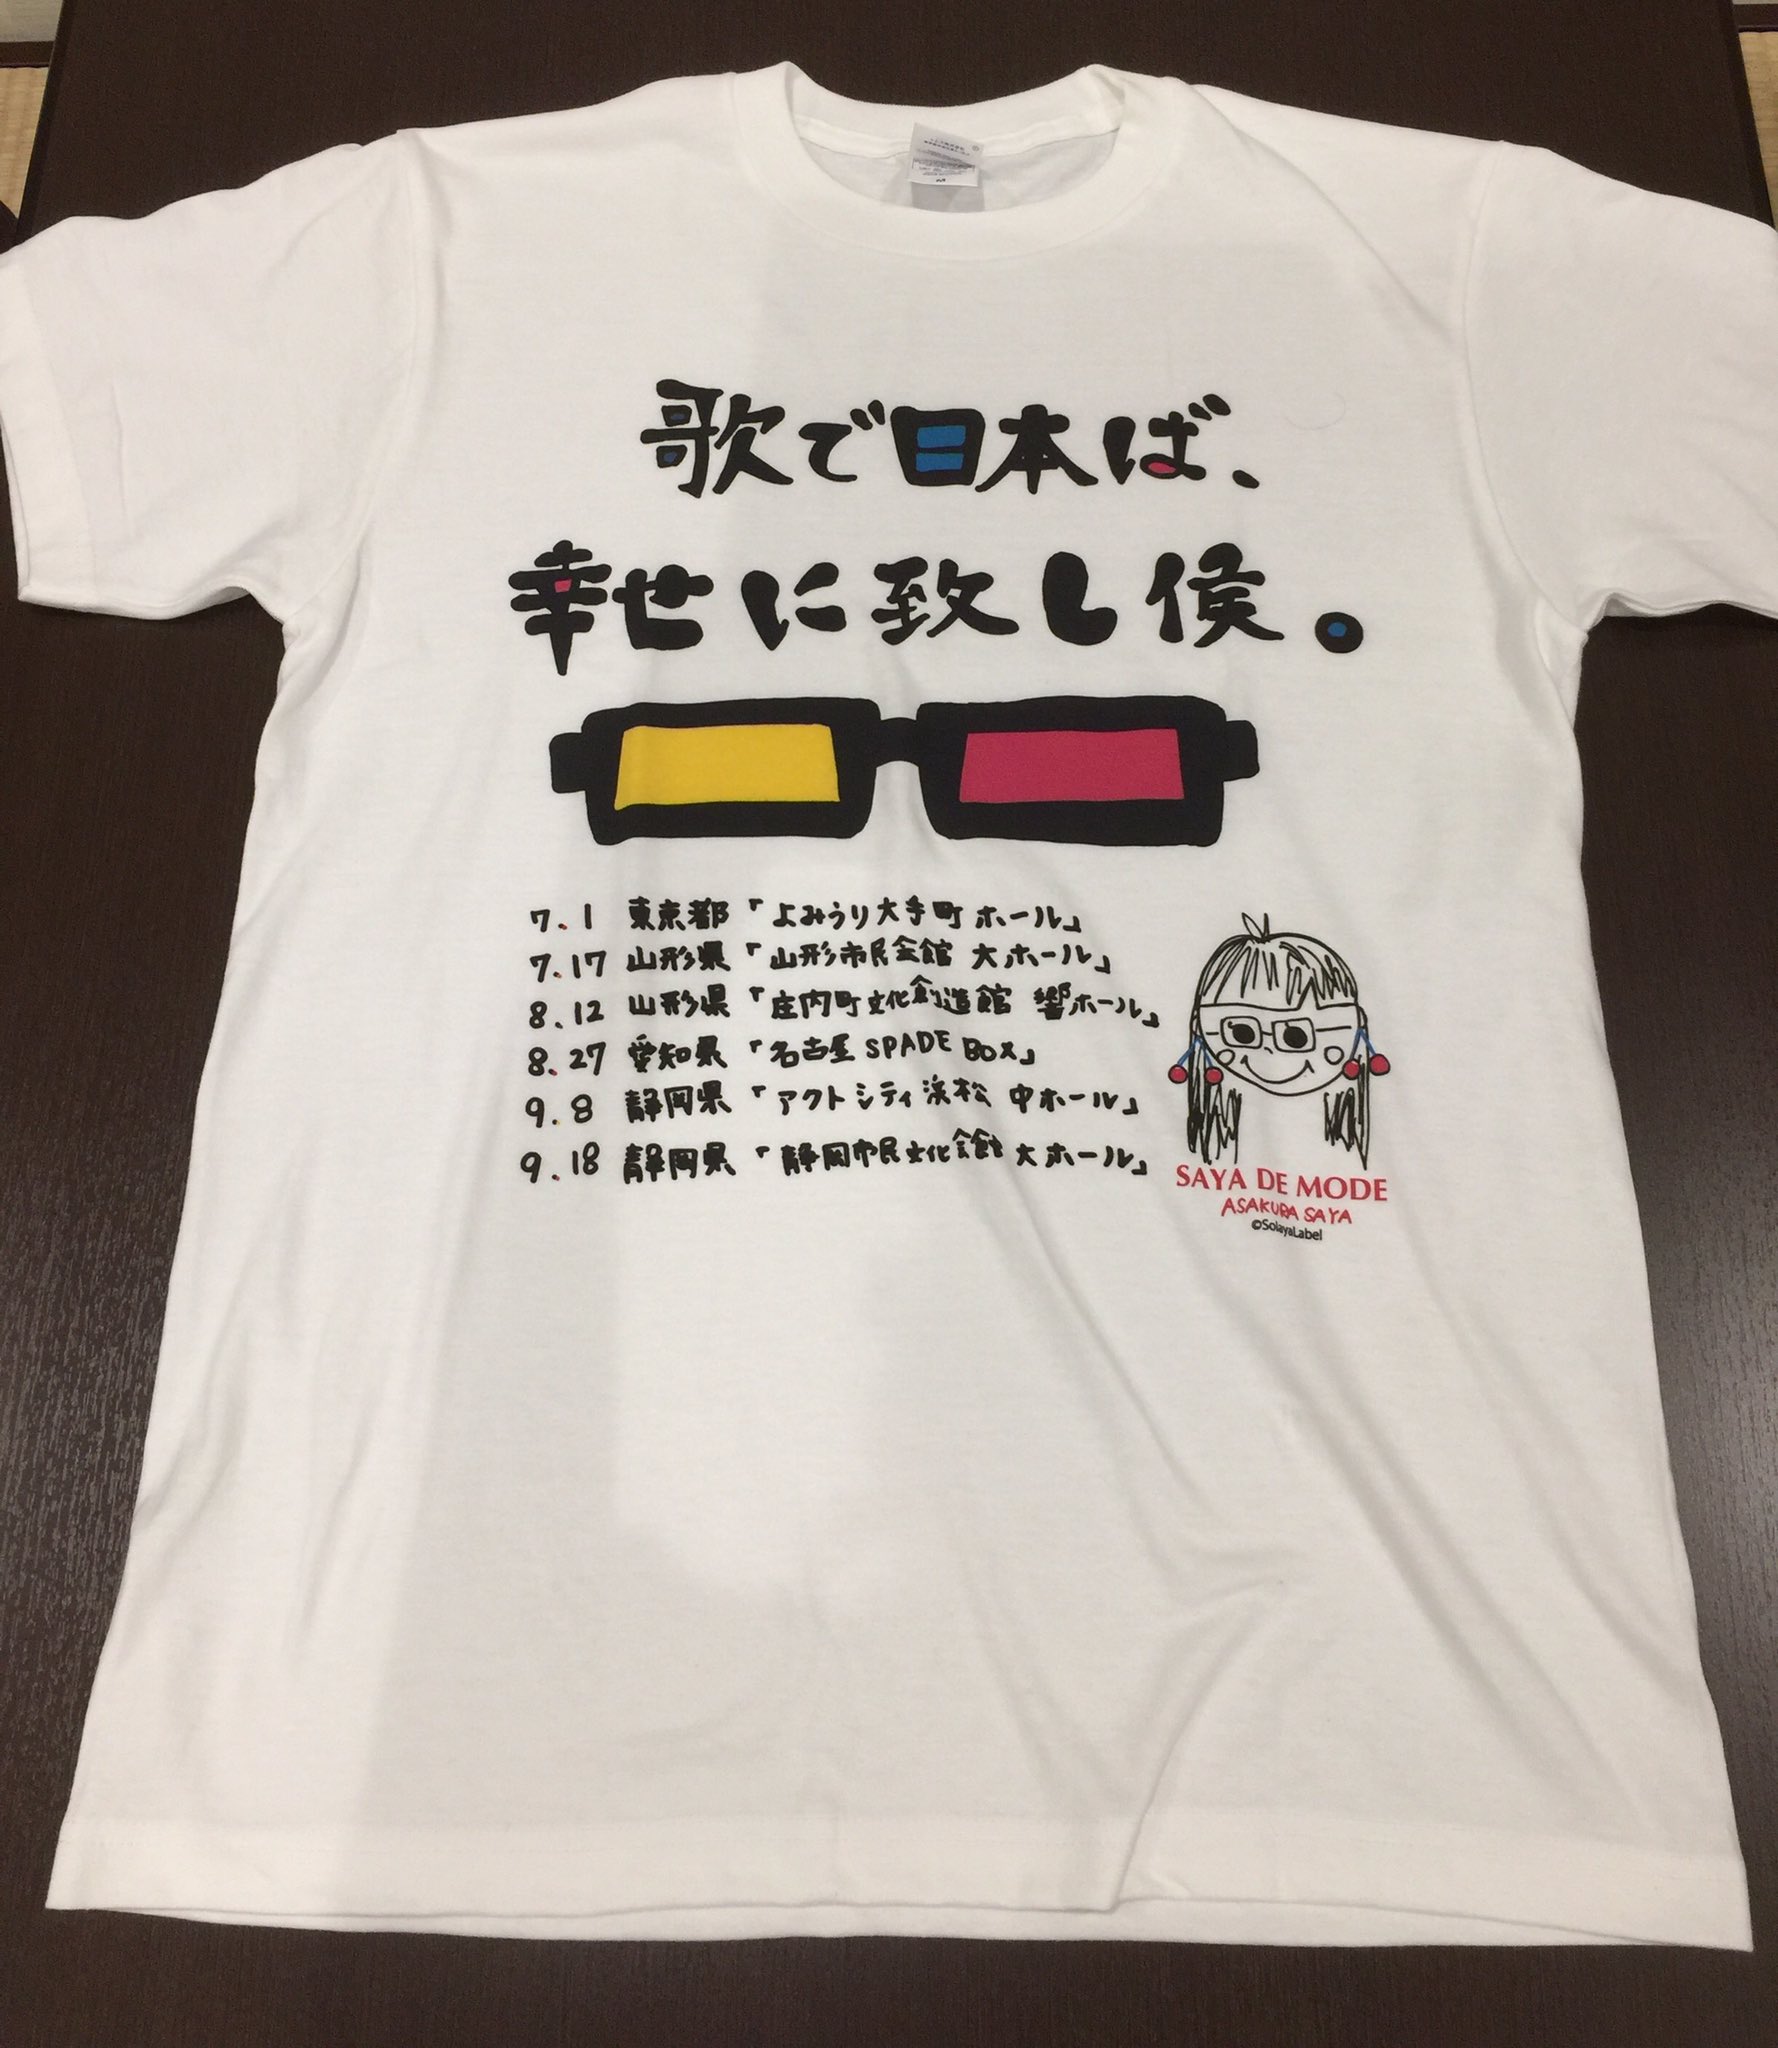 朝倉さやオフィシャル on Twitter: "朝倉さやデザイン ツアーTシャツと 朝倉さやnew色紙 今日から販売開始します！ 今日は開場